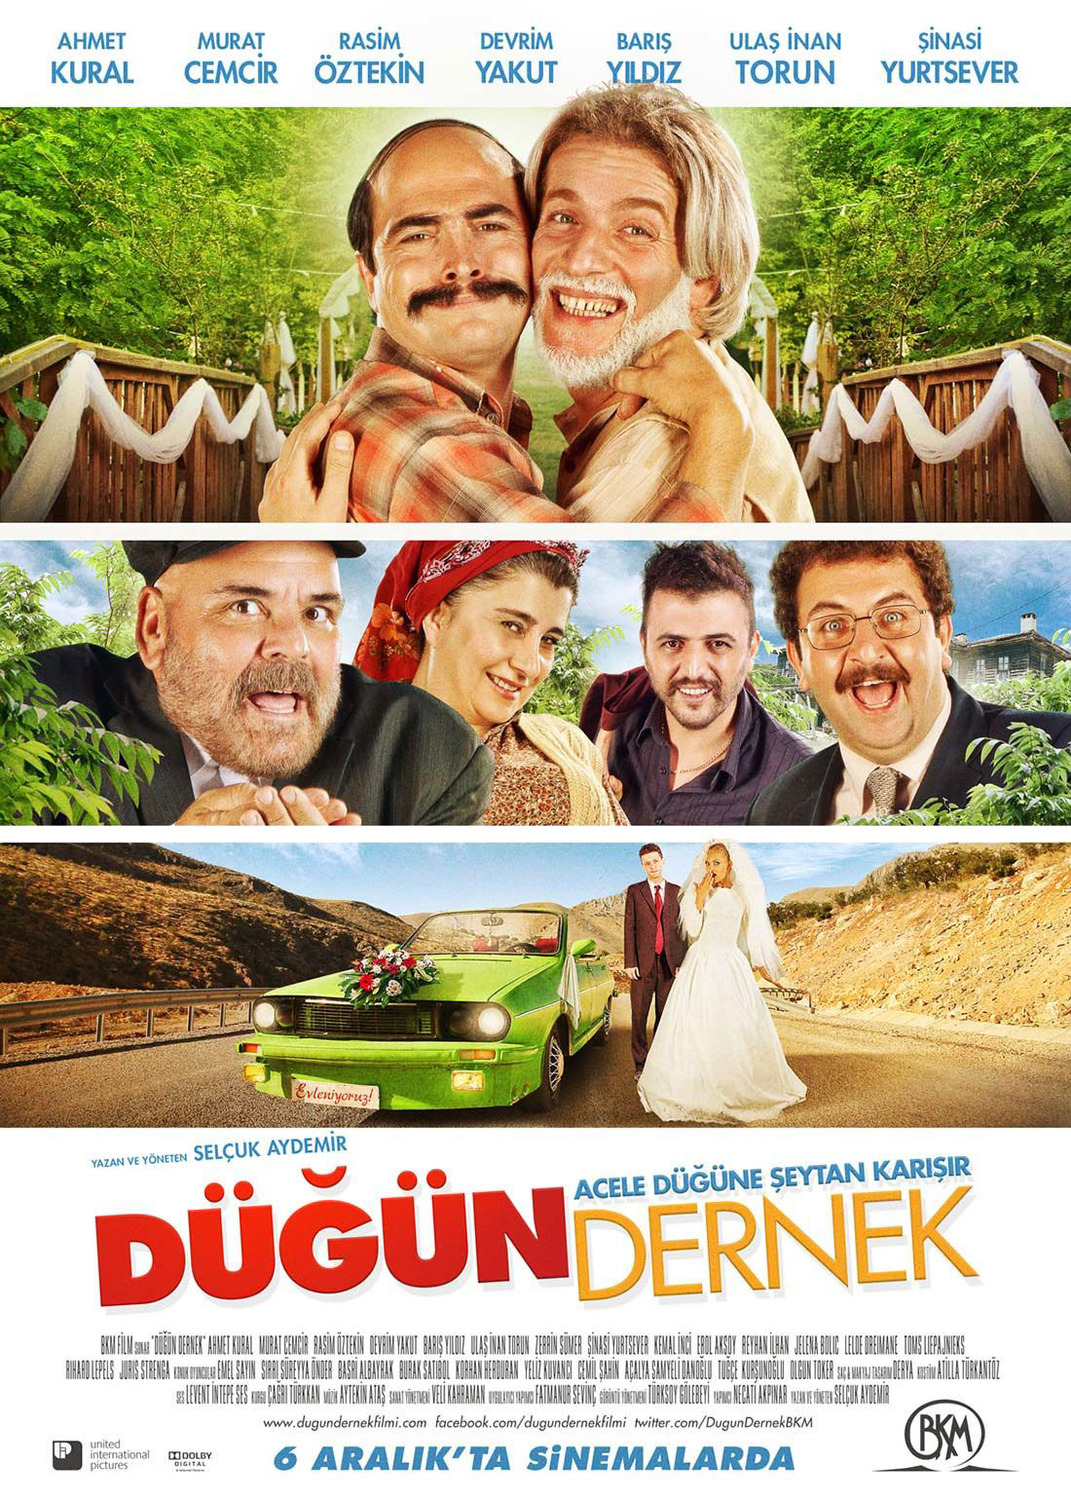 Extra Large Movie Poster Image for Dügün Dernek (#1 of 2)